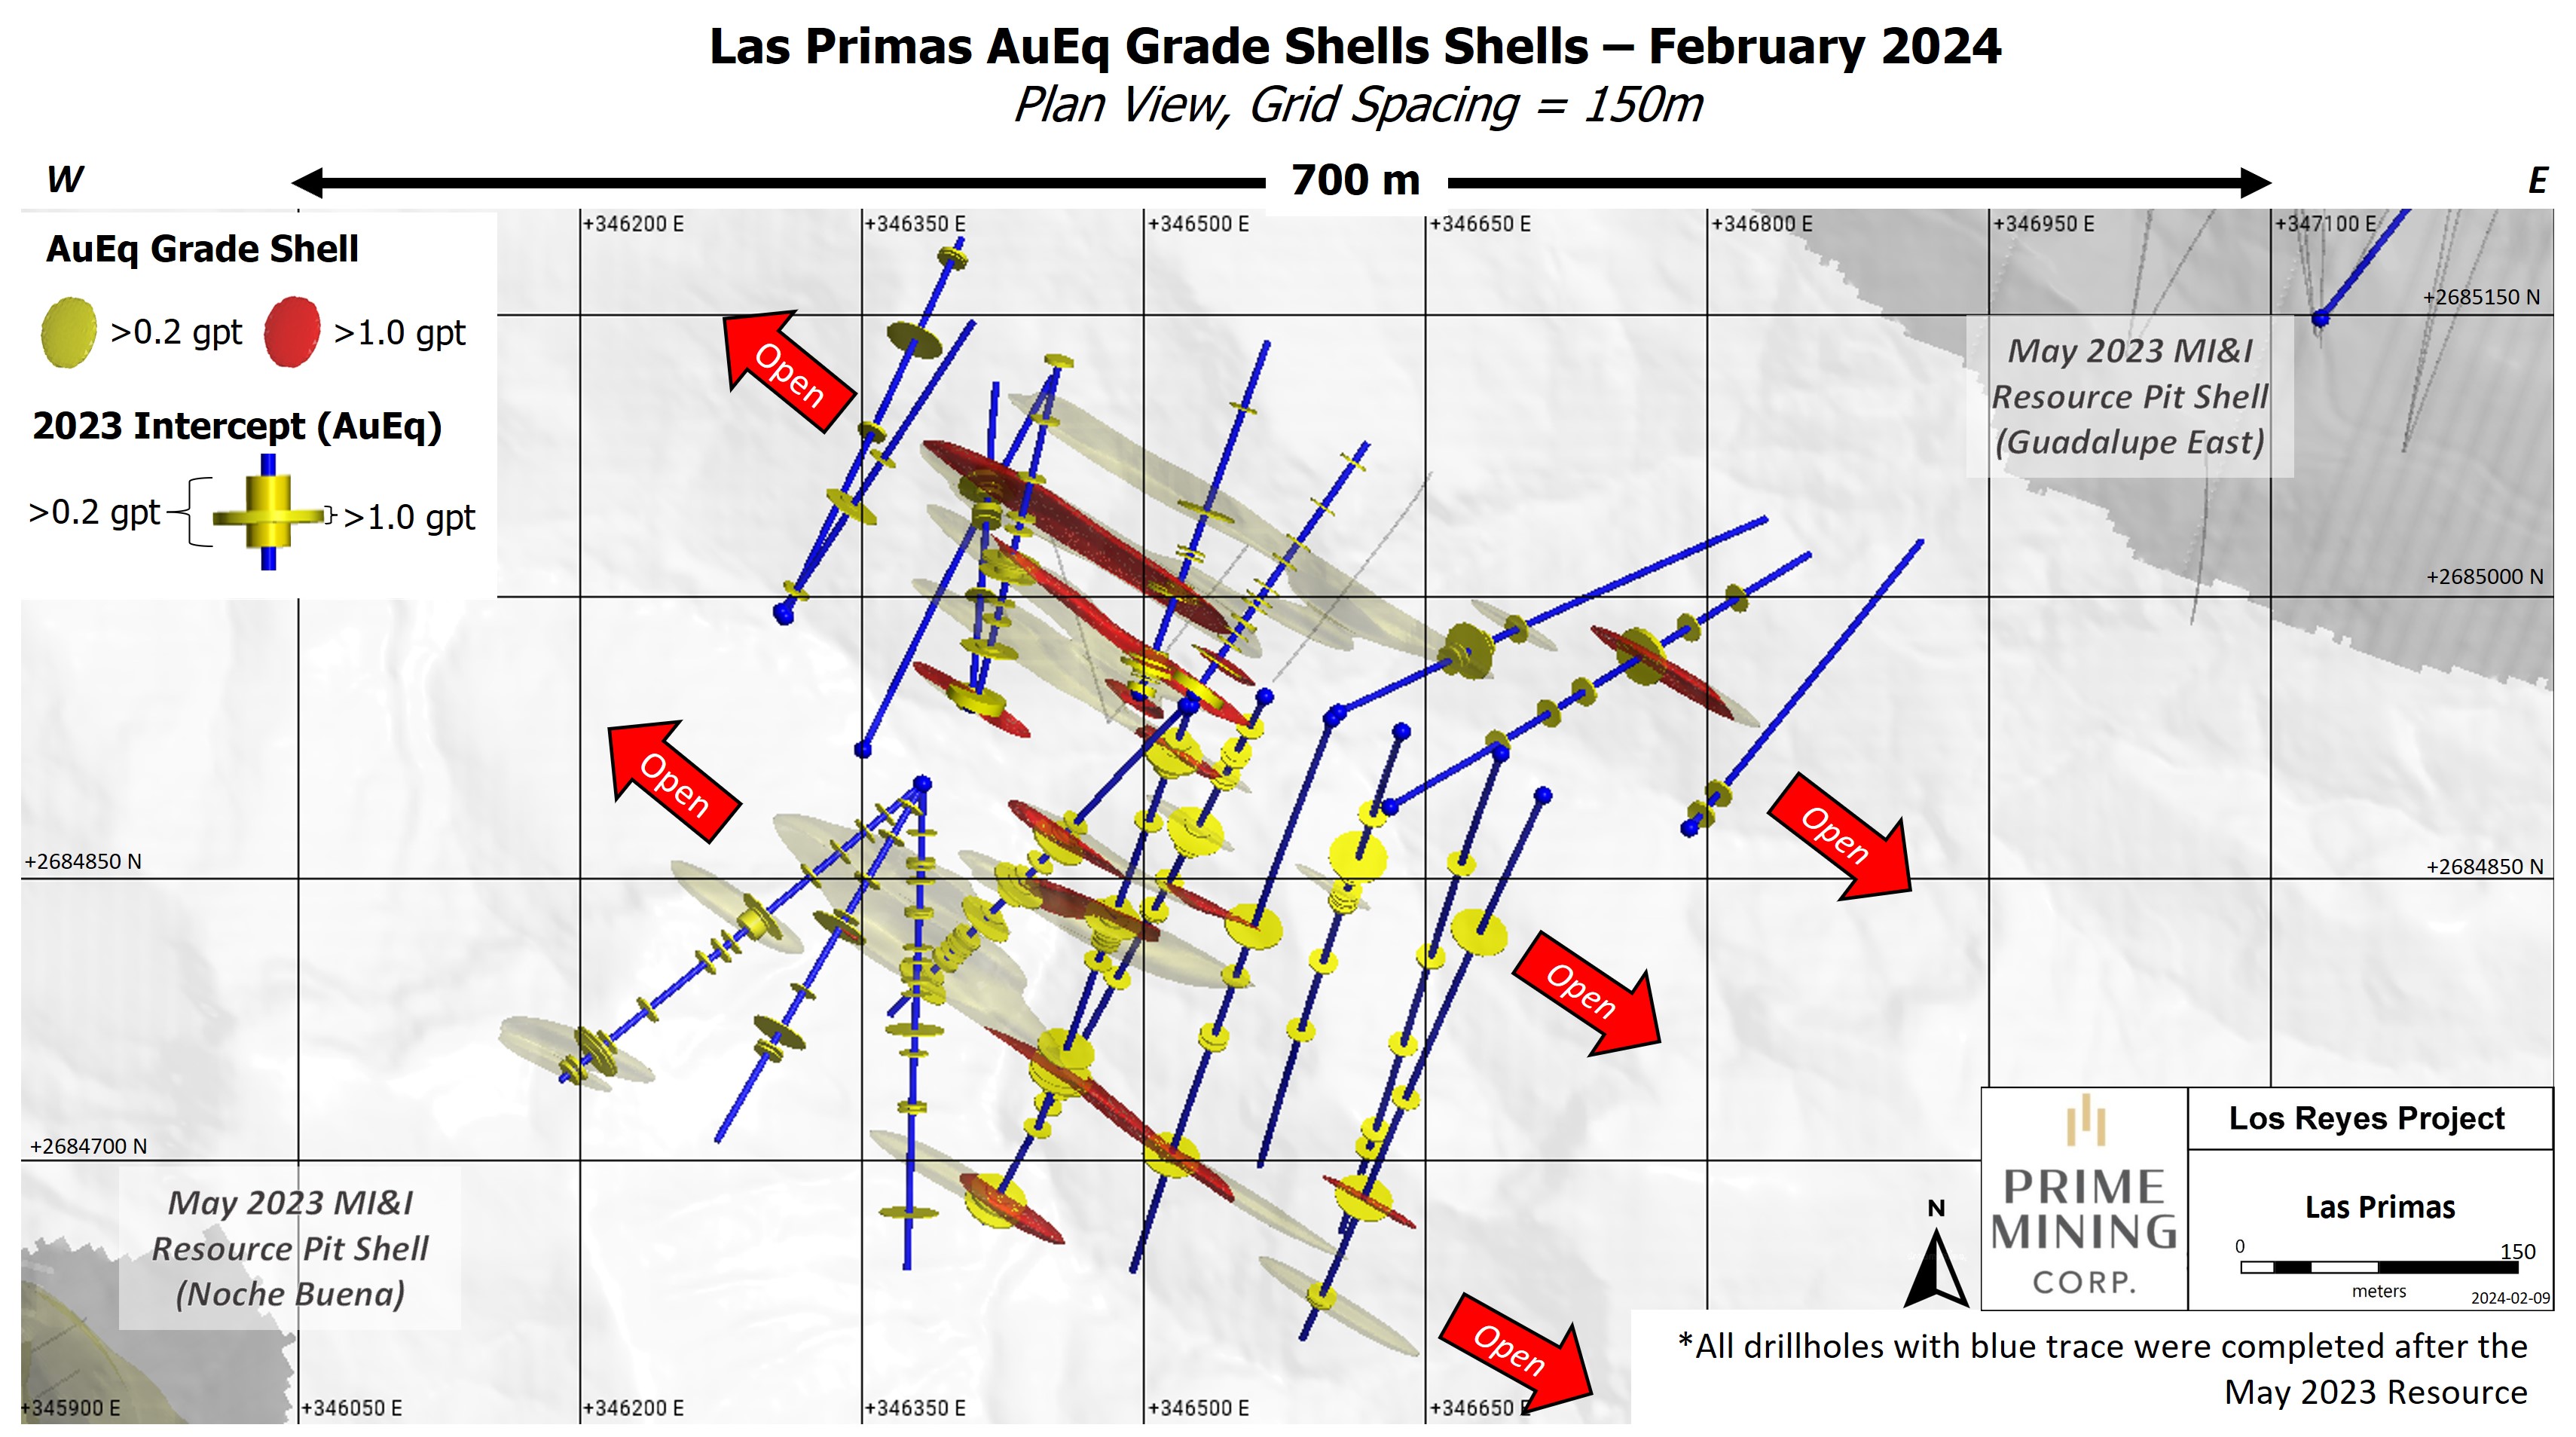 Figure 5 Las Primas AuEq Grade Shells_Feb 2024